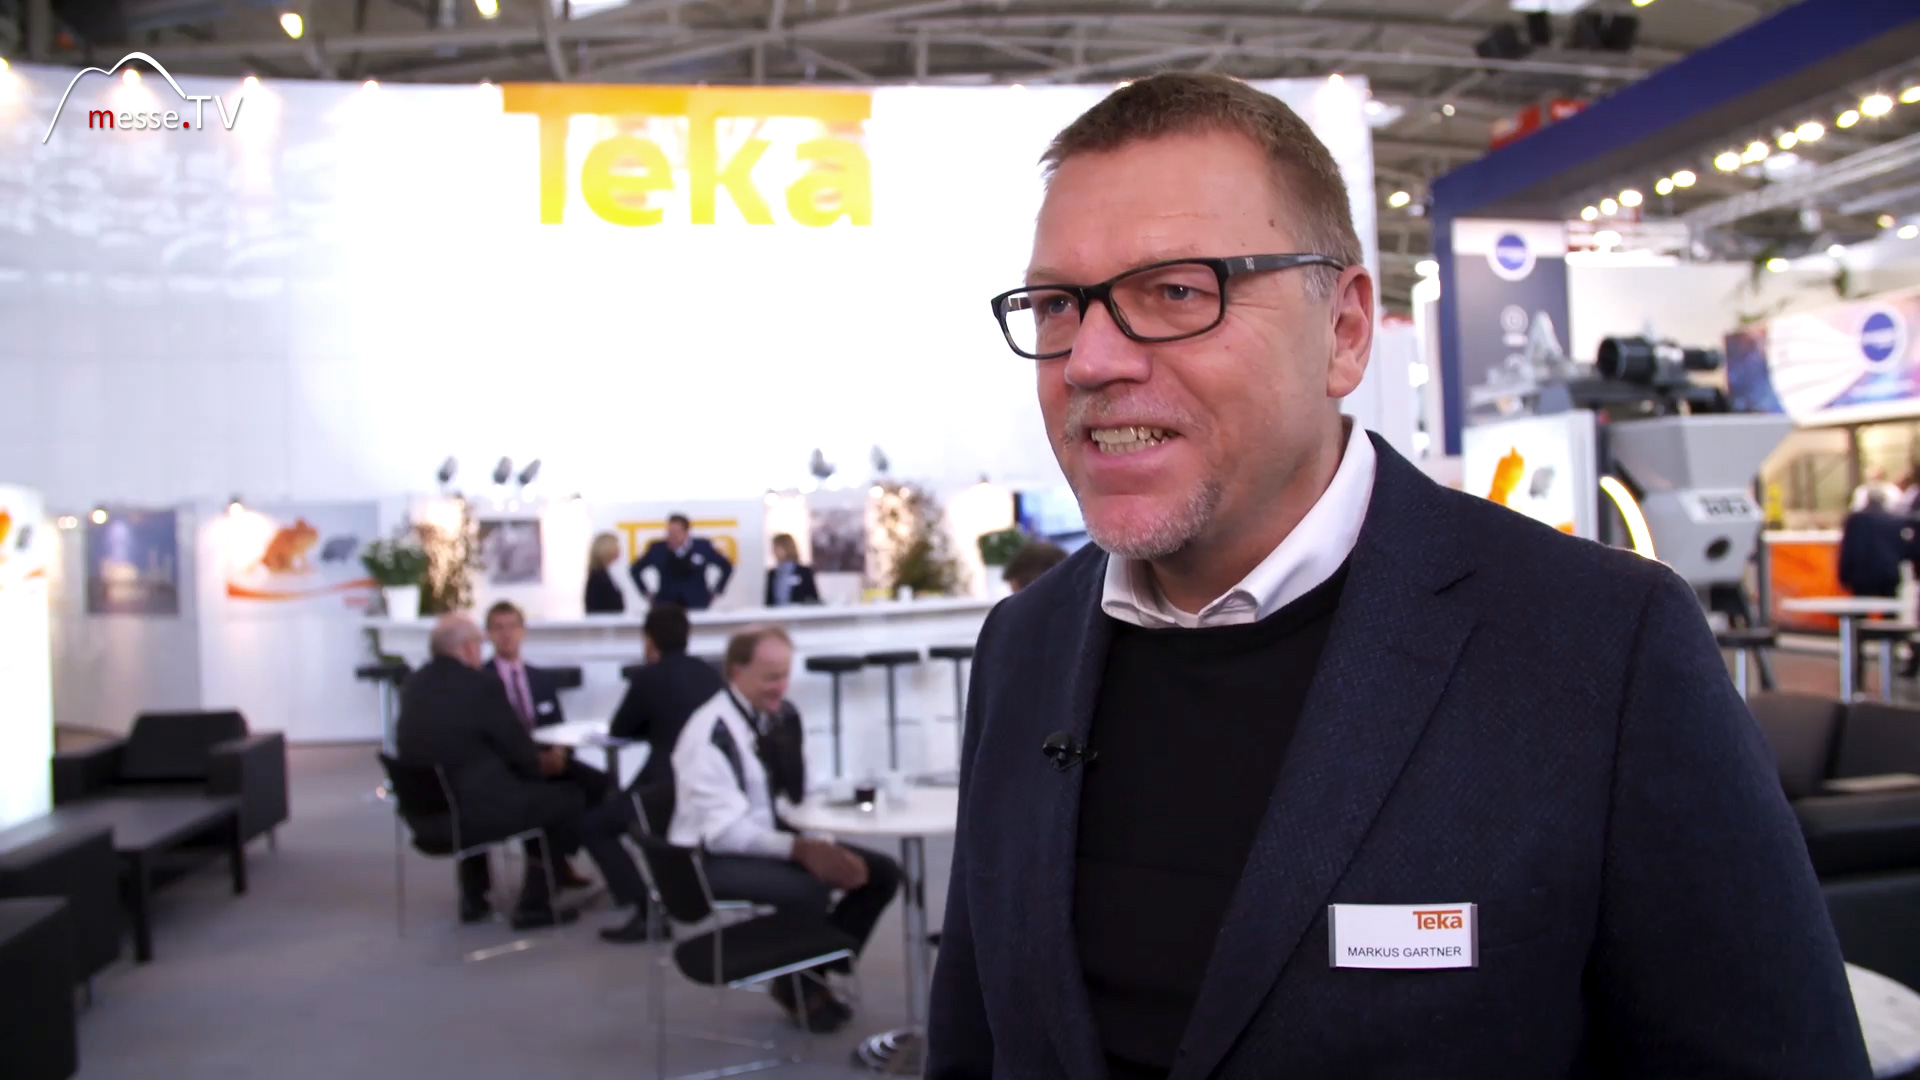 Interview Markus Gartner Teka Maschinenbau bauma 2019 Muenchen